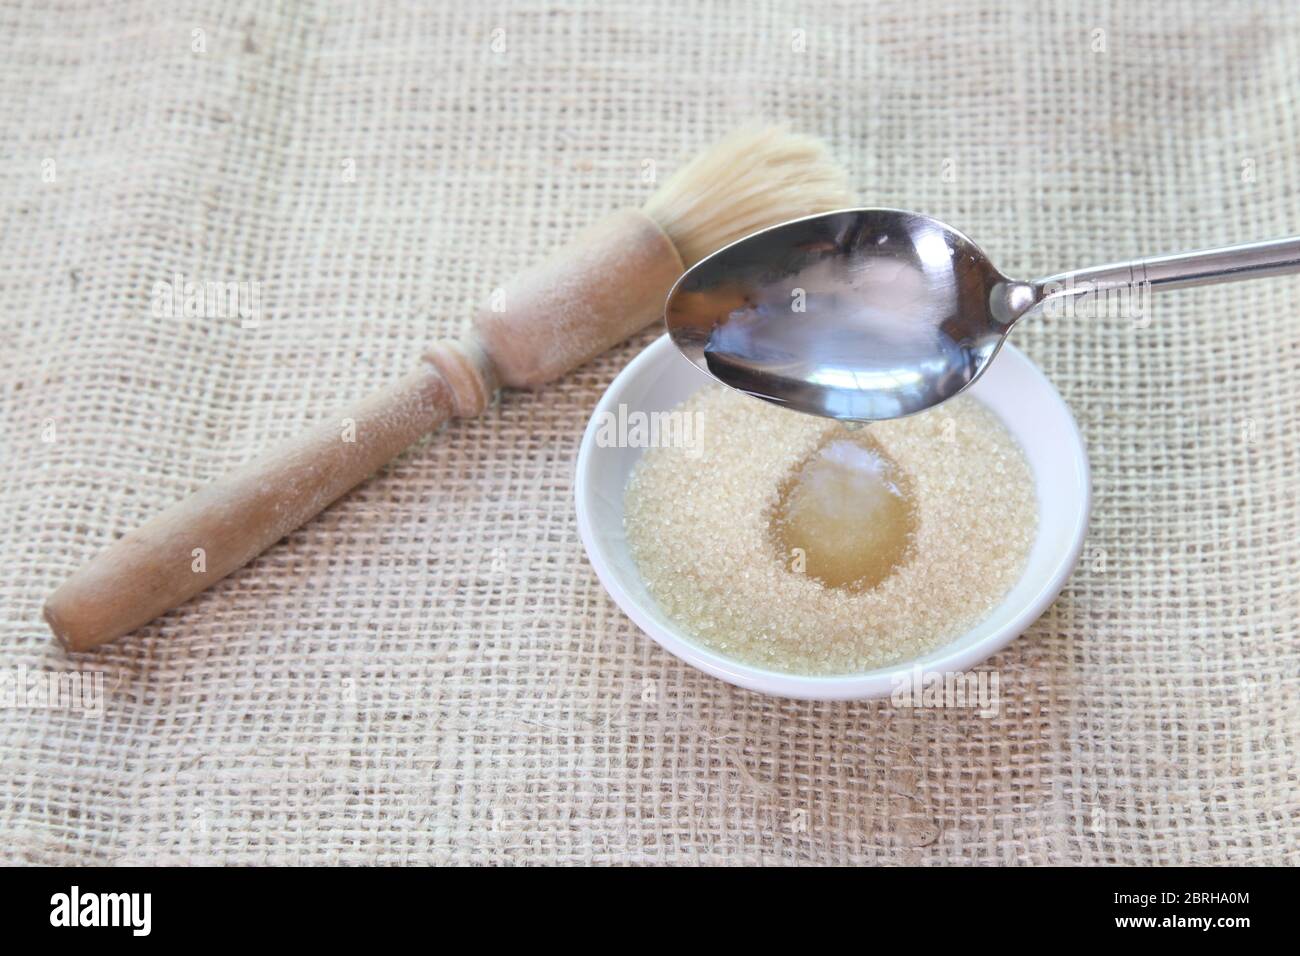 Faire une pâte de sirop de sucre en ajoutant de l'eau à non raffiné Sucre granulé pour le brossage sur les petits pains - Sally Série d'images Lunn Baking Banque D'Images